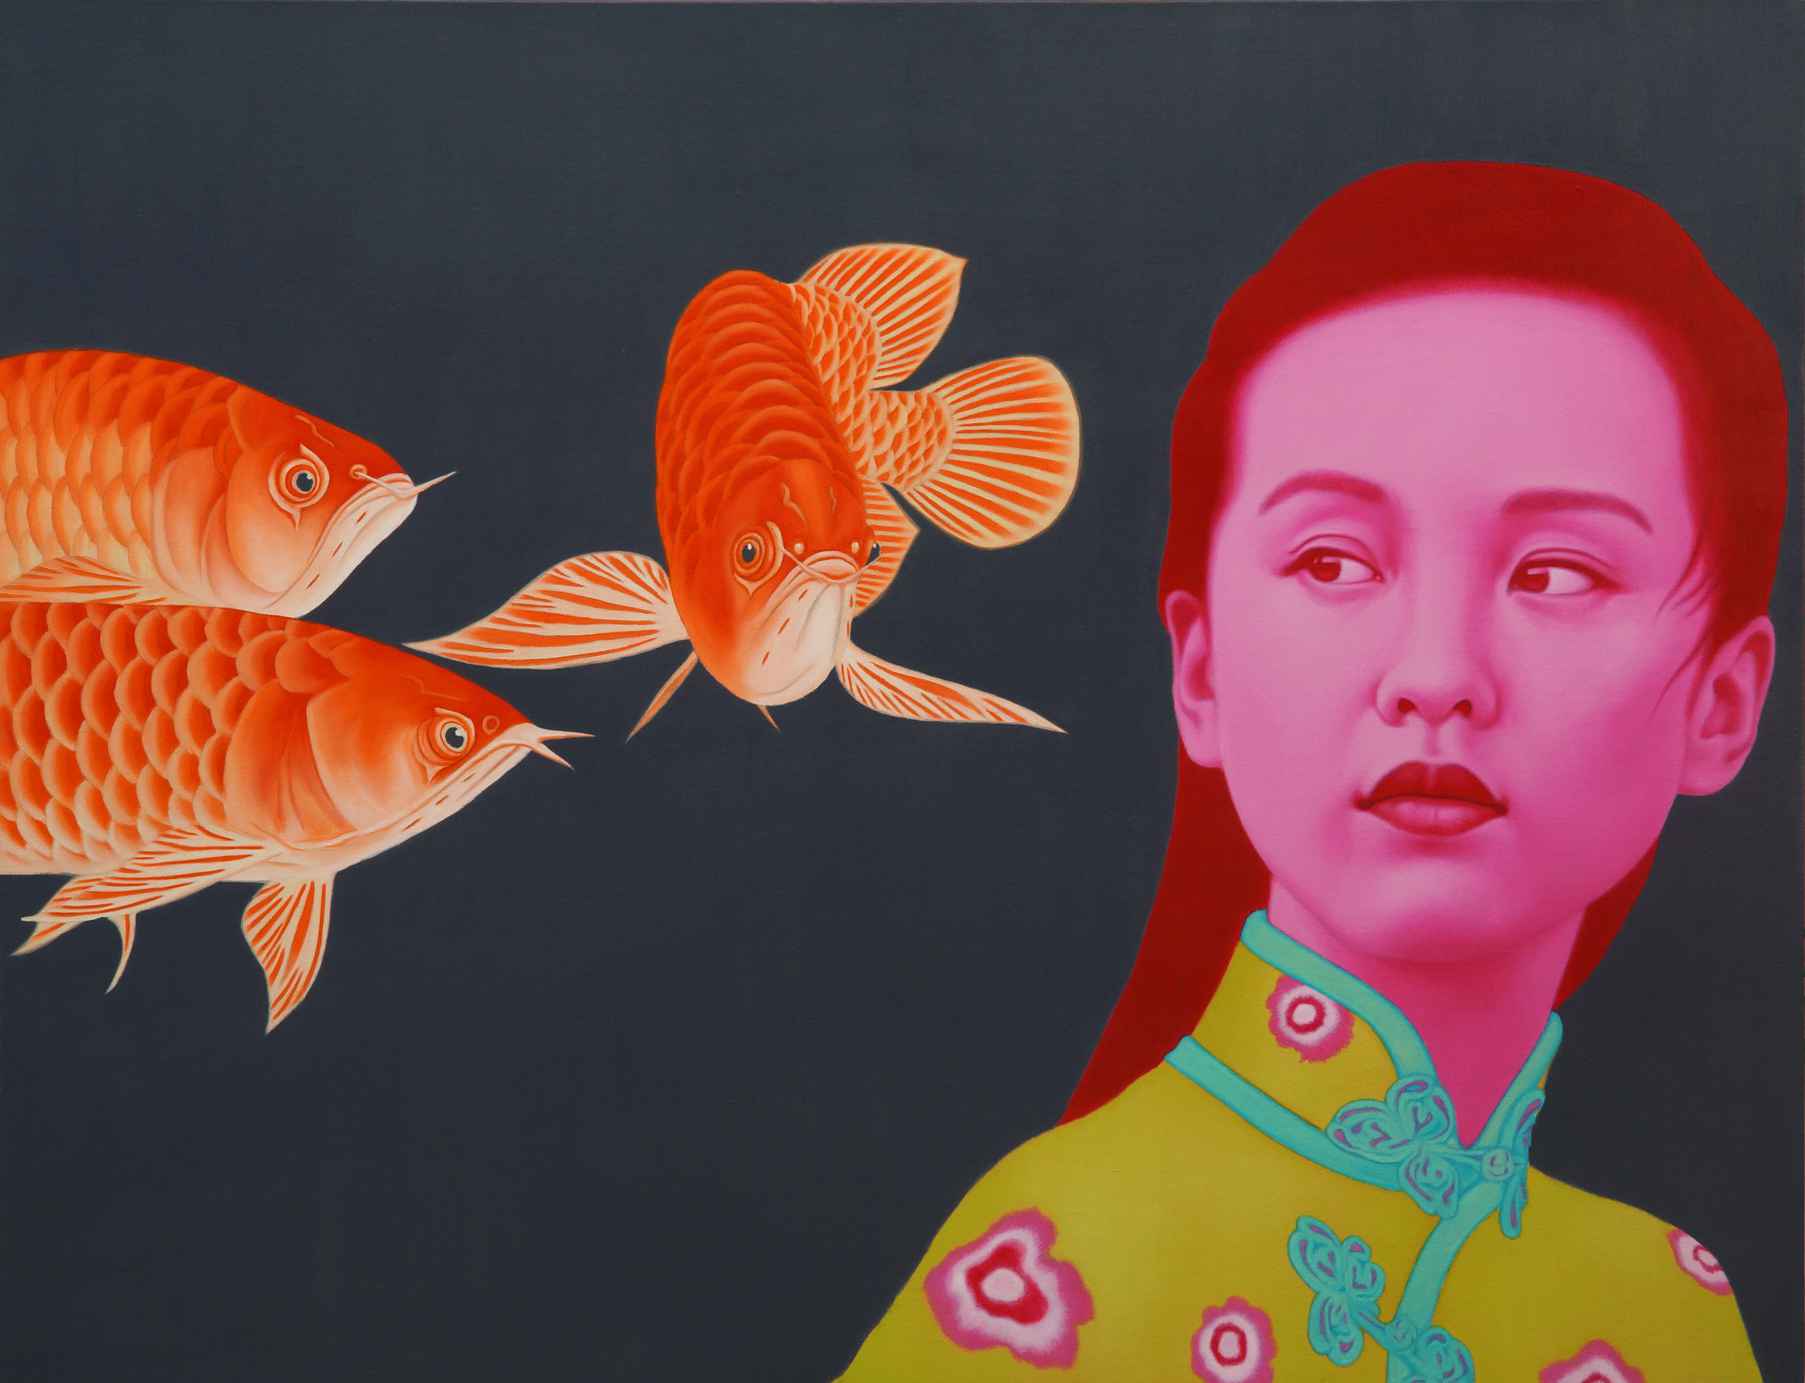 中国女孩 CHINA GIRL 100x130cm 布面油画 OIL ON CANVAS